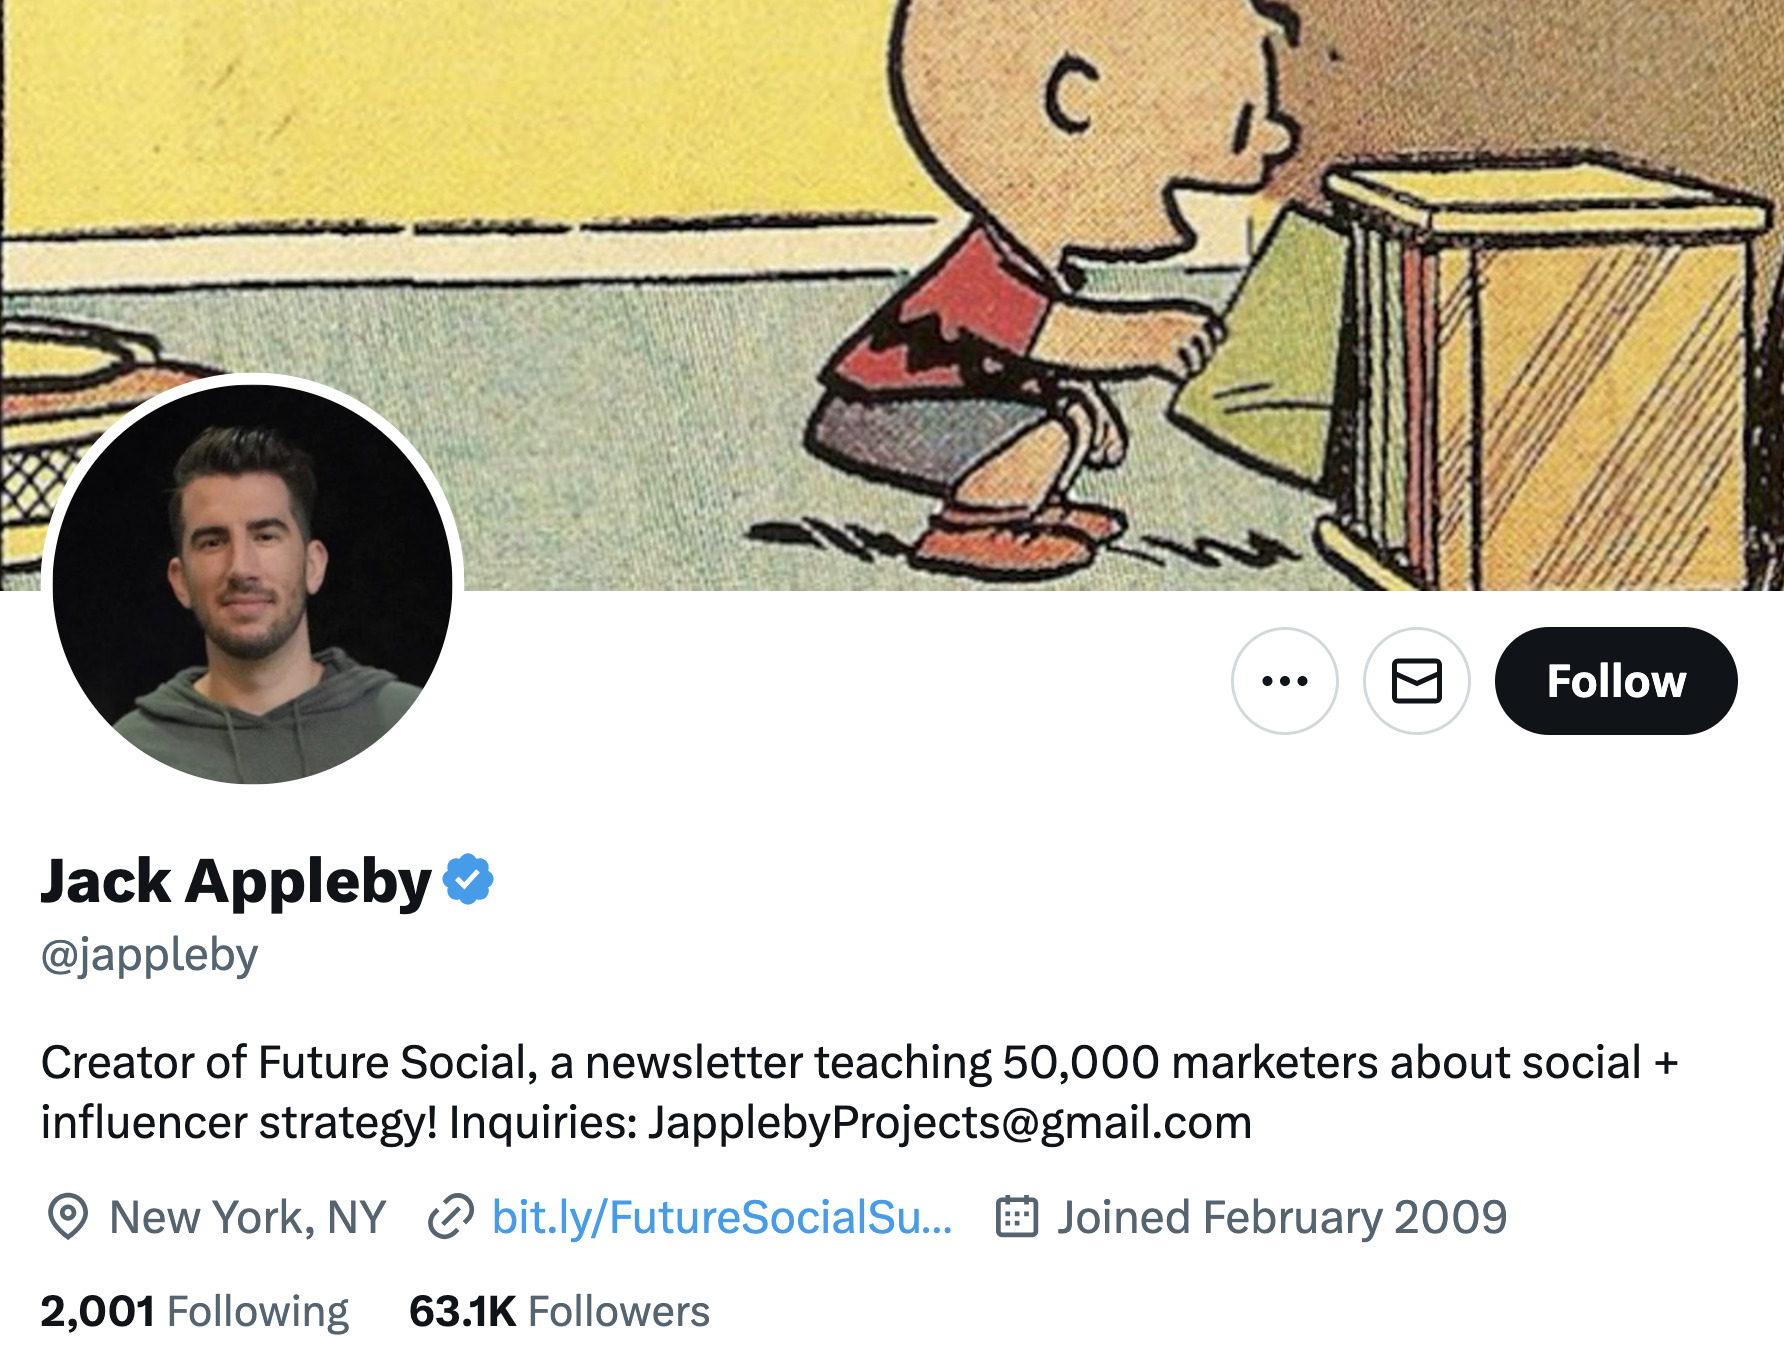 Jack Appleby's Twitter branding